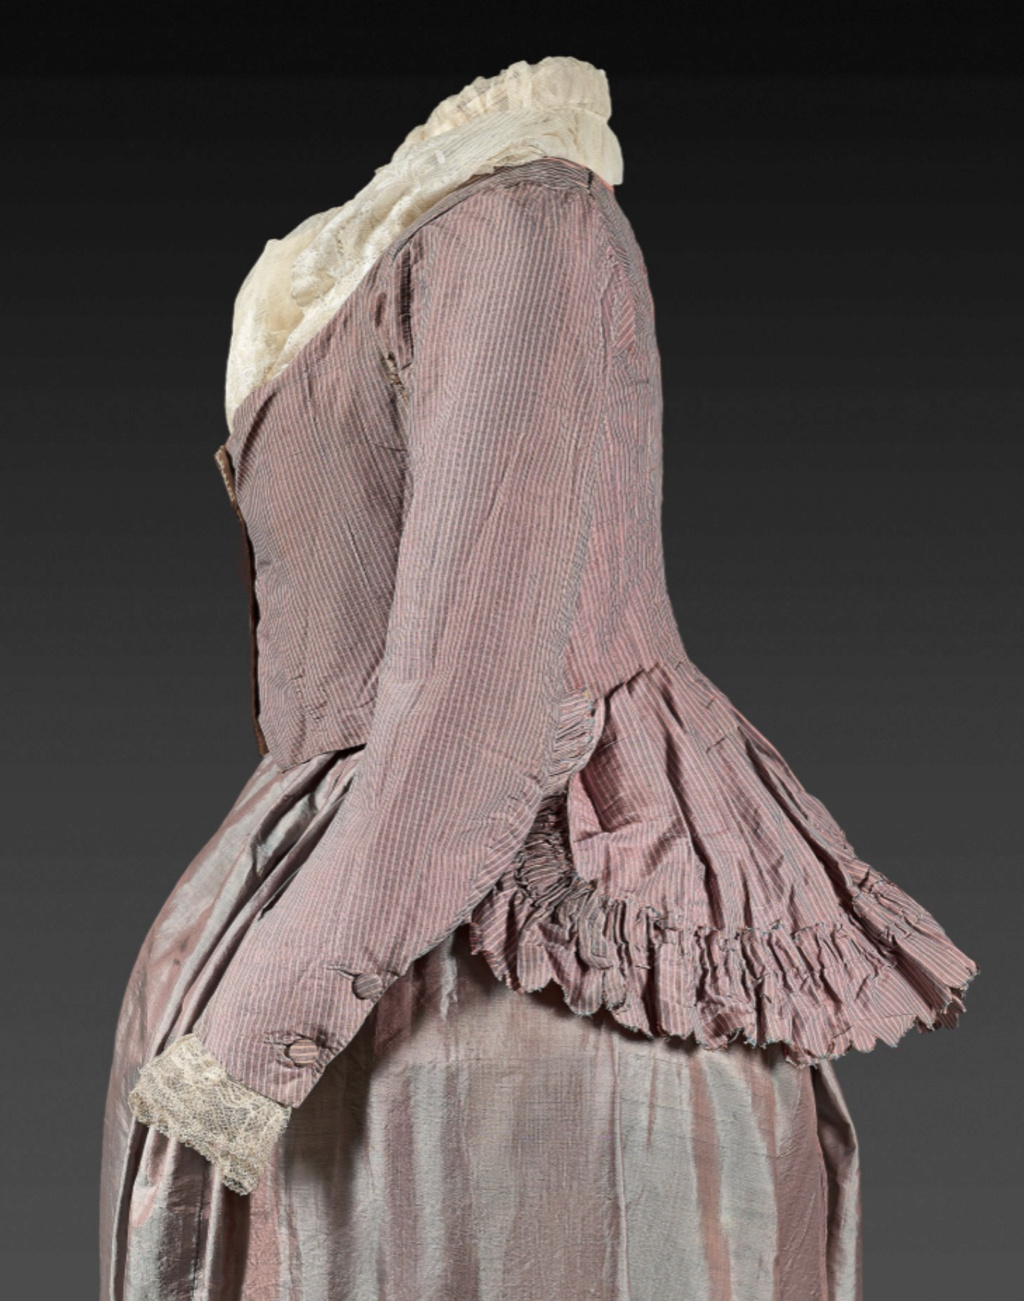 Robes du XVIIIe siècle - Page 3 Capt4857